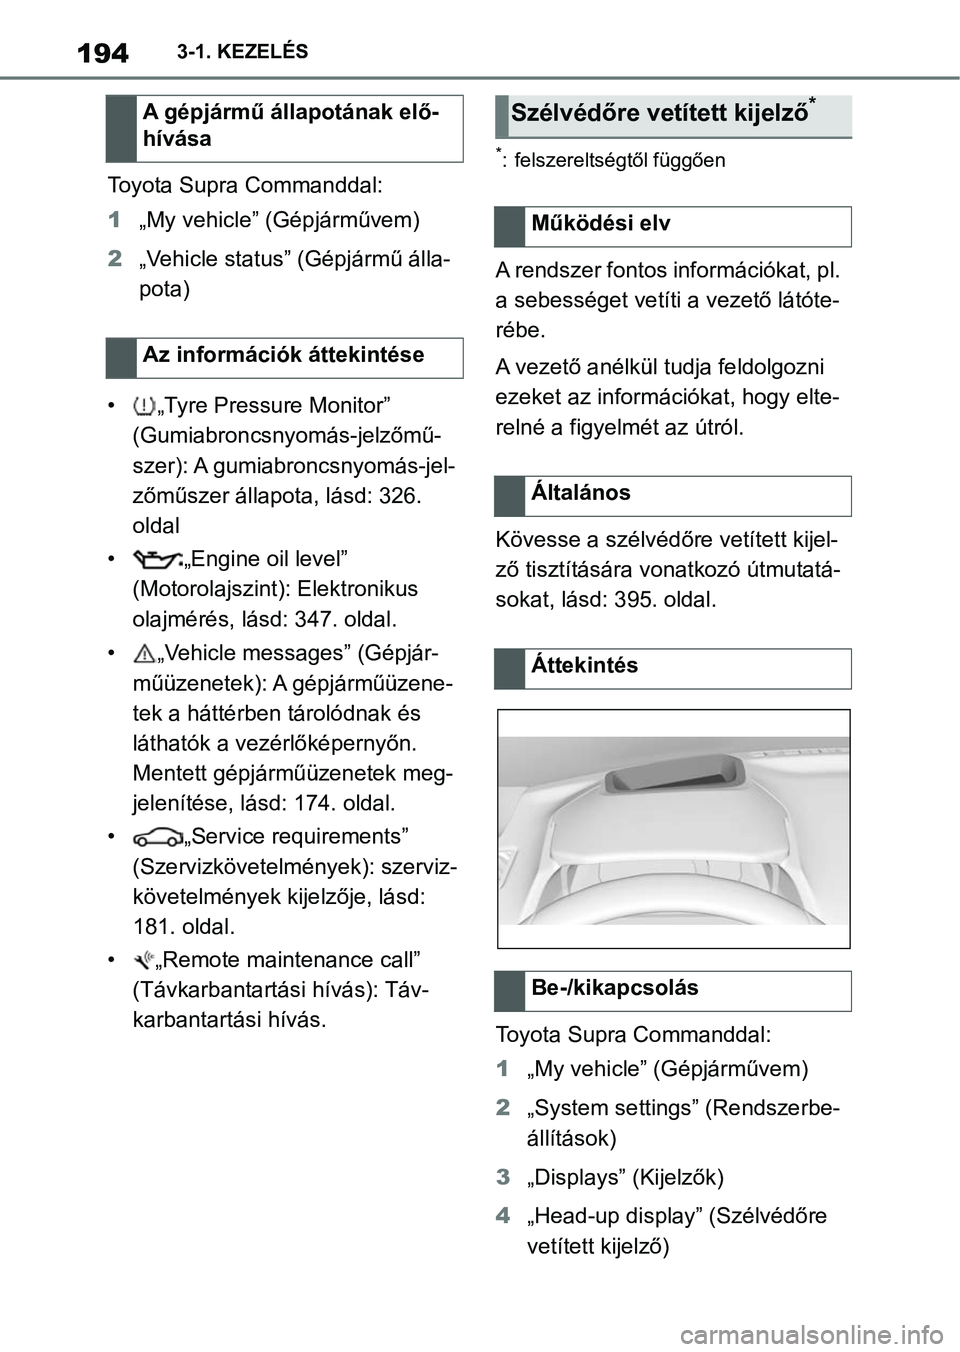 TOYOTA SUPRA 2020  Kezelési útmutató (in Hungarian) 1943-1. KEZELÉS
Toyota Supra Commanddal:
1„My vehicle” (Gépjárművem)
2 „Vehicle status” (Gépjármű álla-
pota)
• „Tyre Pressure Monitor”  (Gumiabroncsnyomás-jelzőmű-
szer): A g